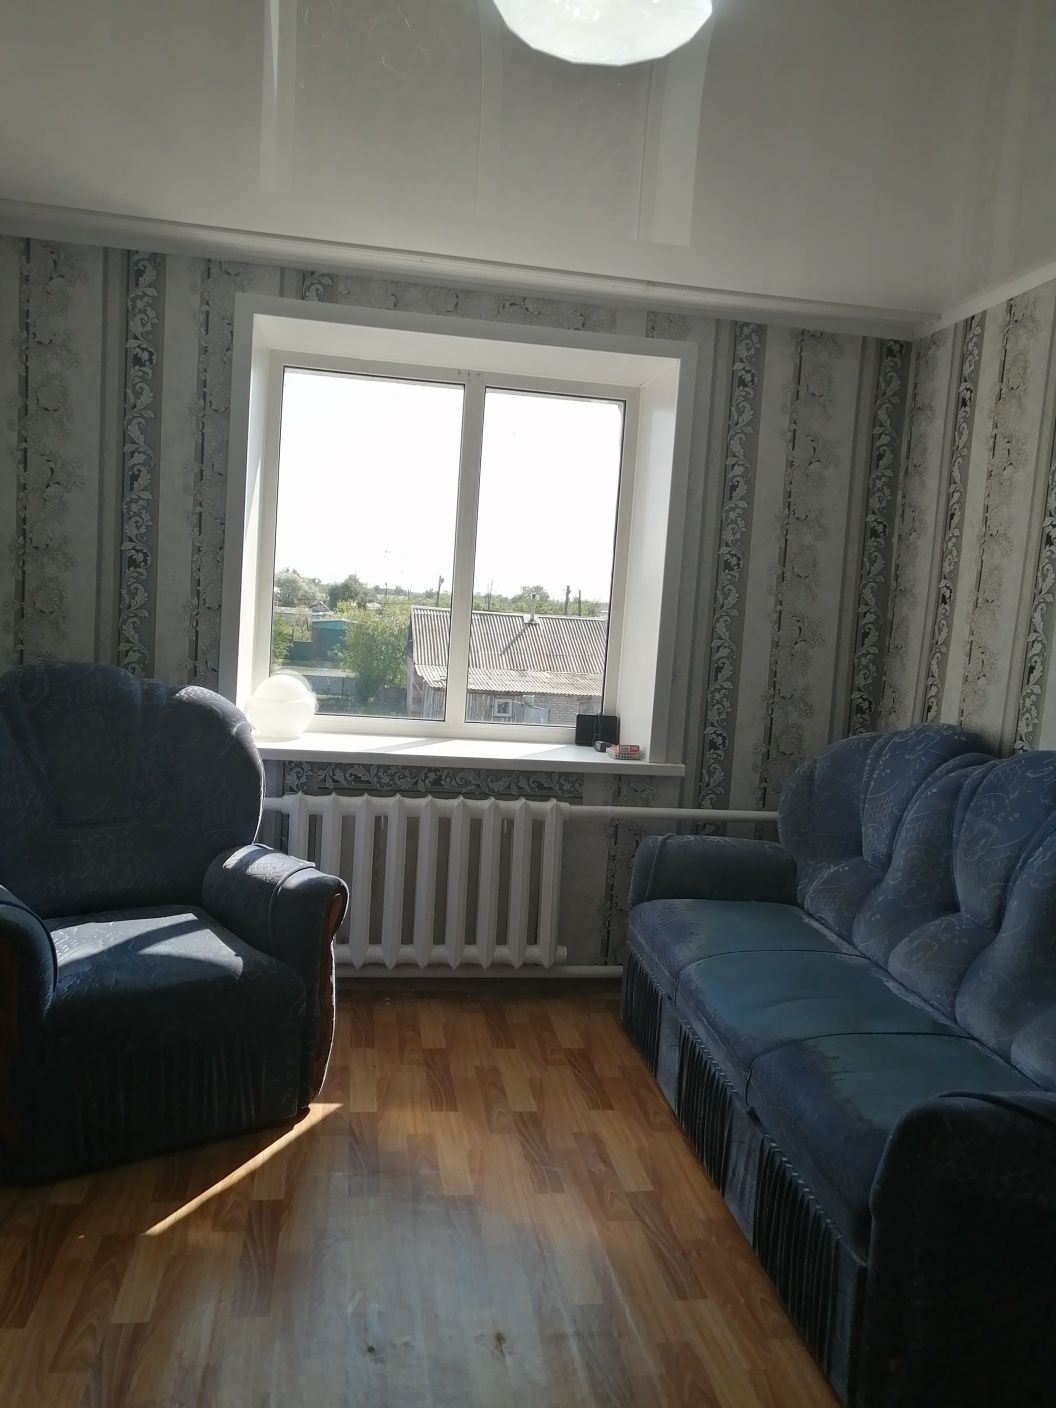 Продам 3х комнатную квартиру в Соколовке от города 30 к